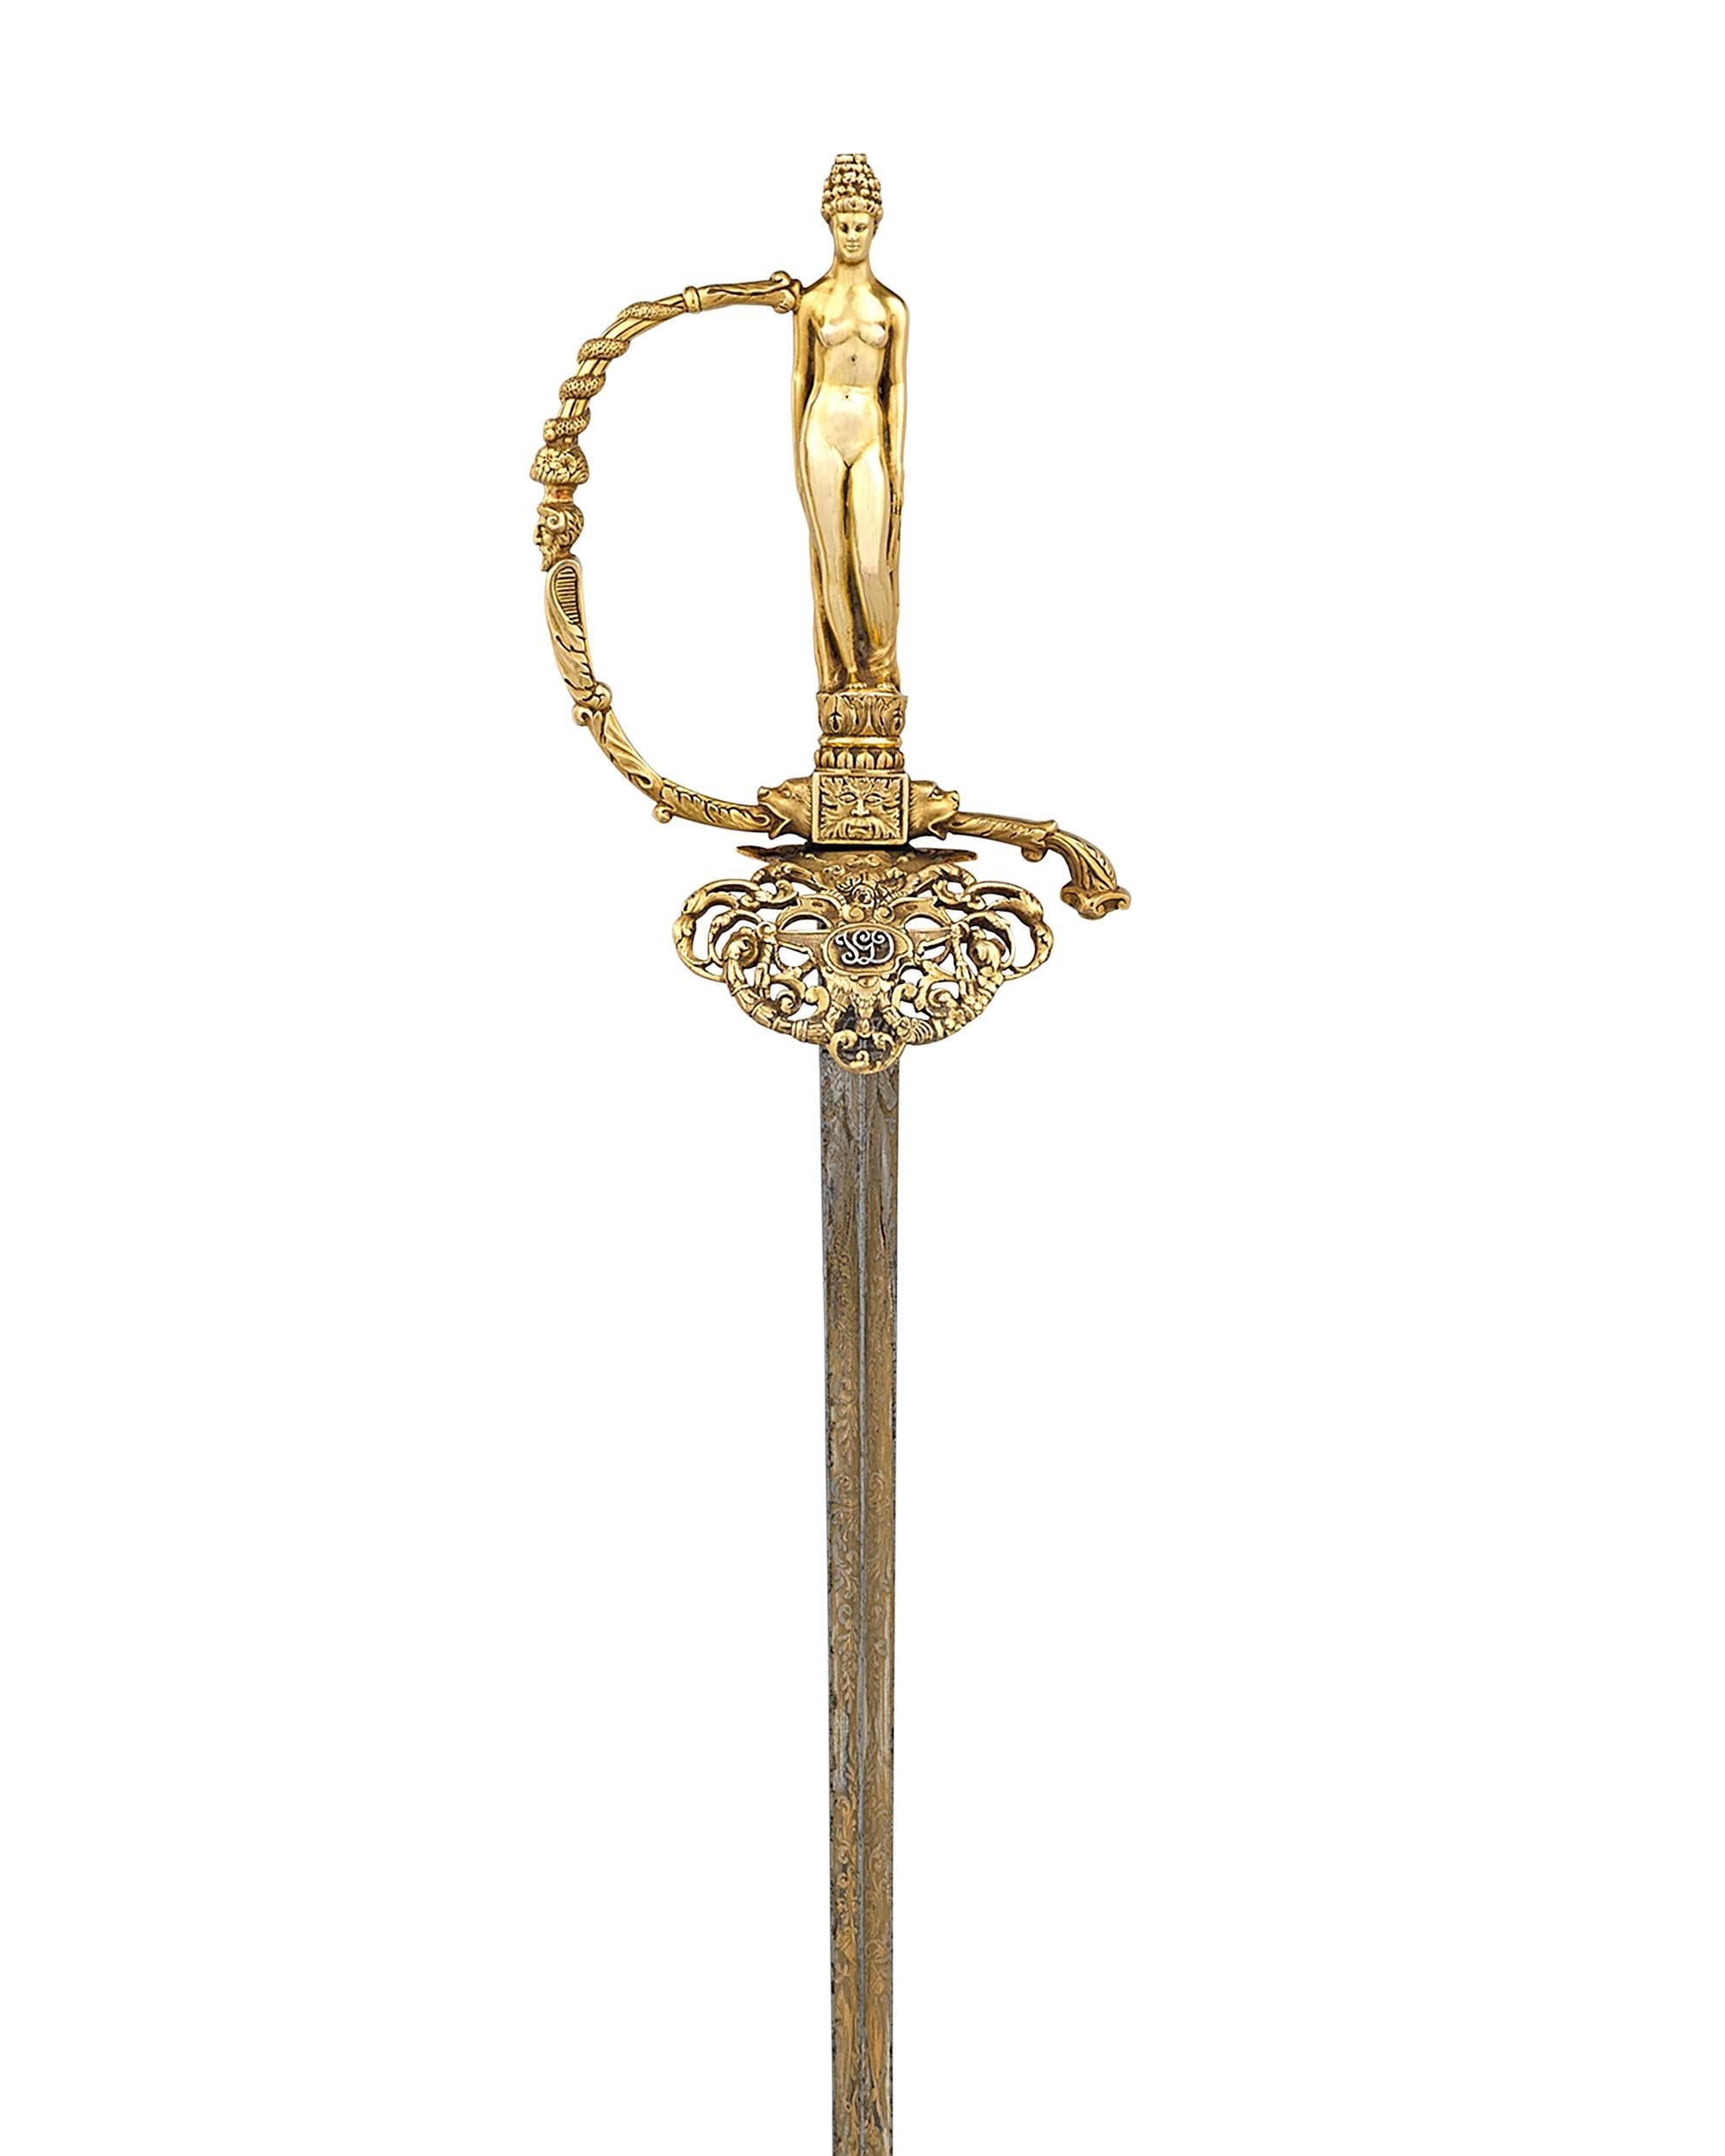 Cette épée importante et unique a été offerte au célèbre peintre français Jean-Gabriel Domergue pour commémorer l'élection du peintre à l'illustre Académie des Beaux-Arts en 1950. L'intronisation à l'Académie française, l'une des plus hautes